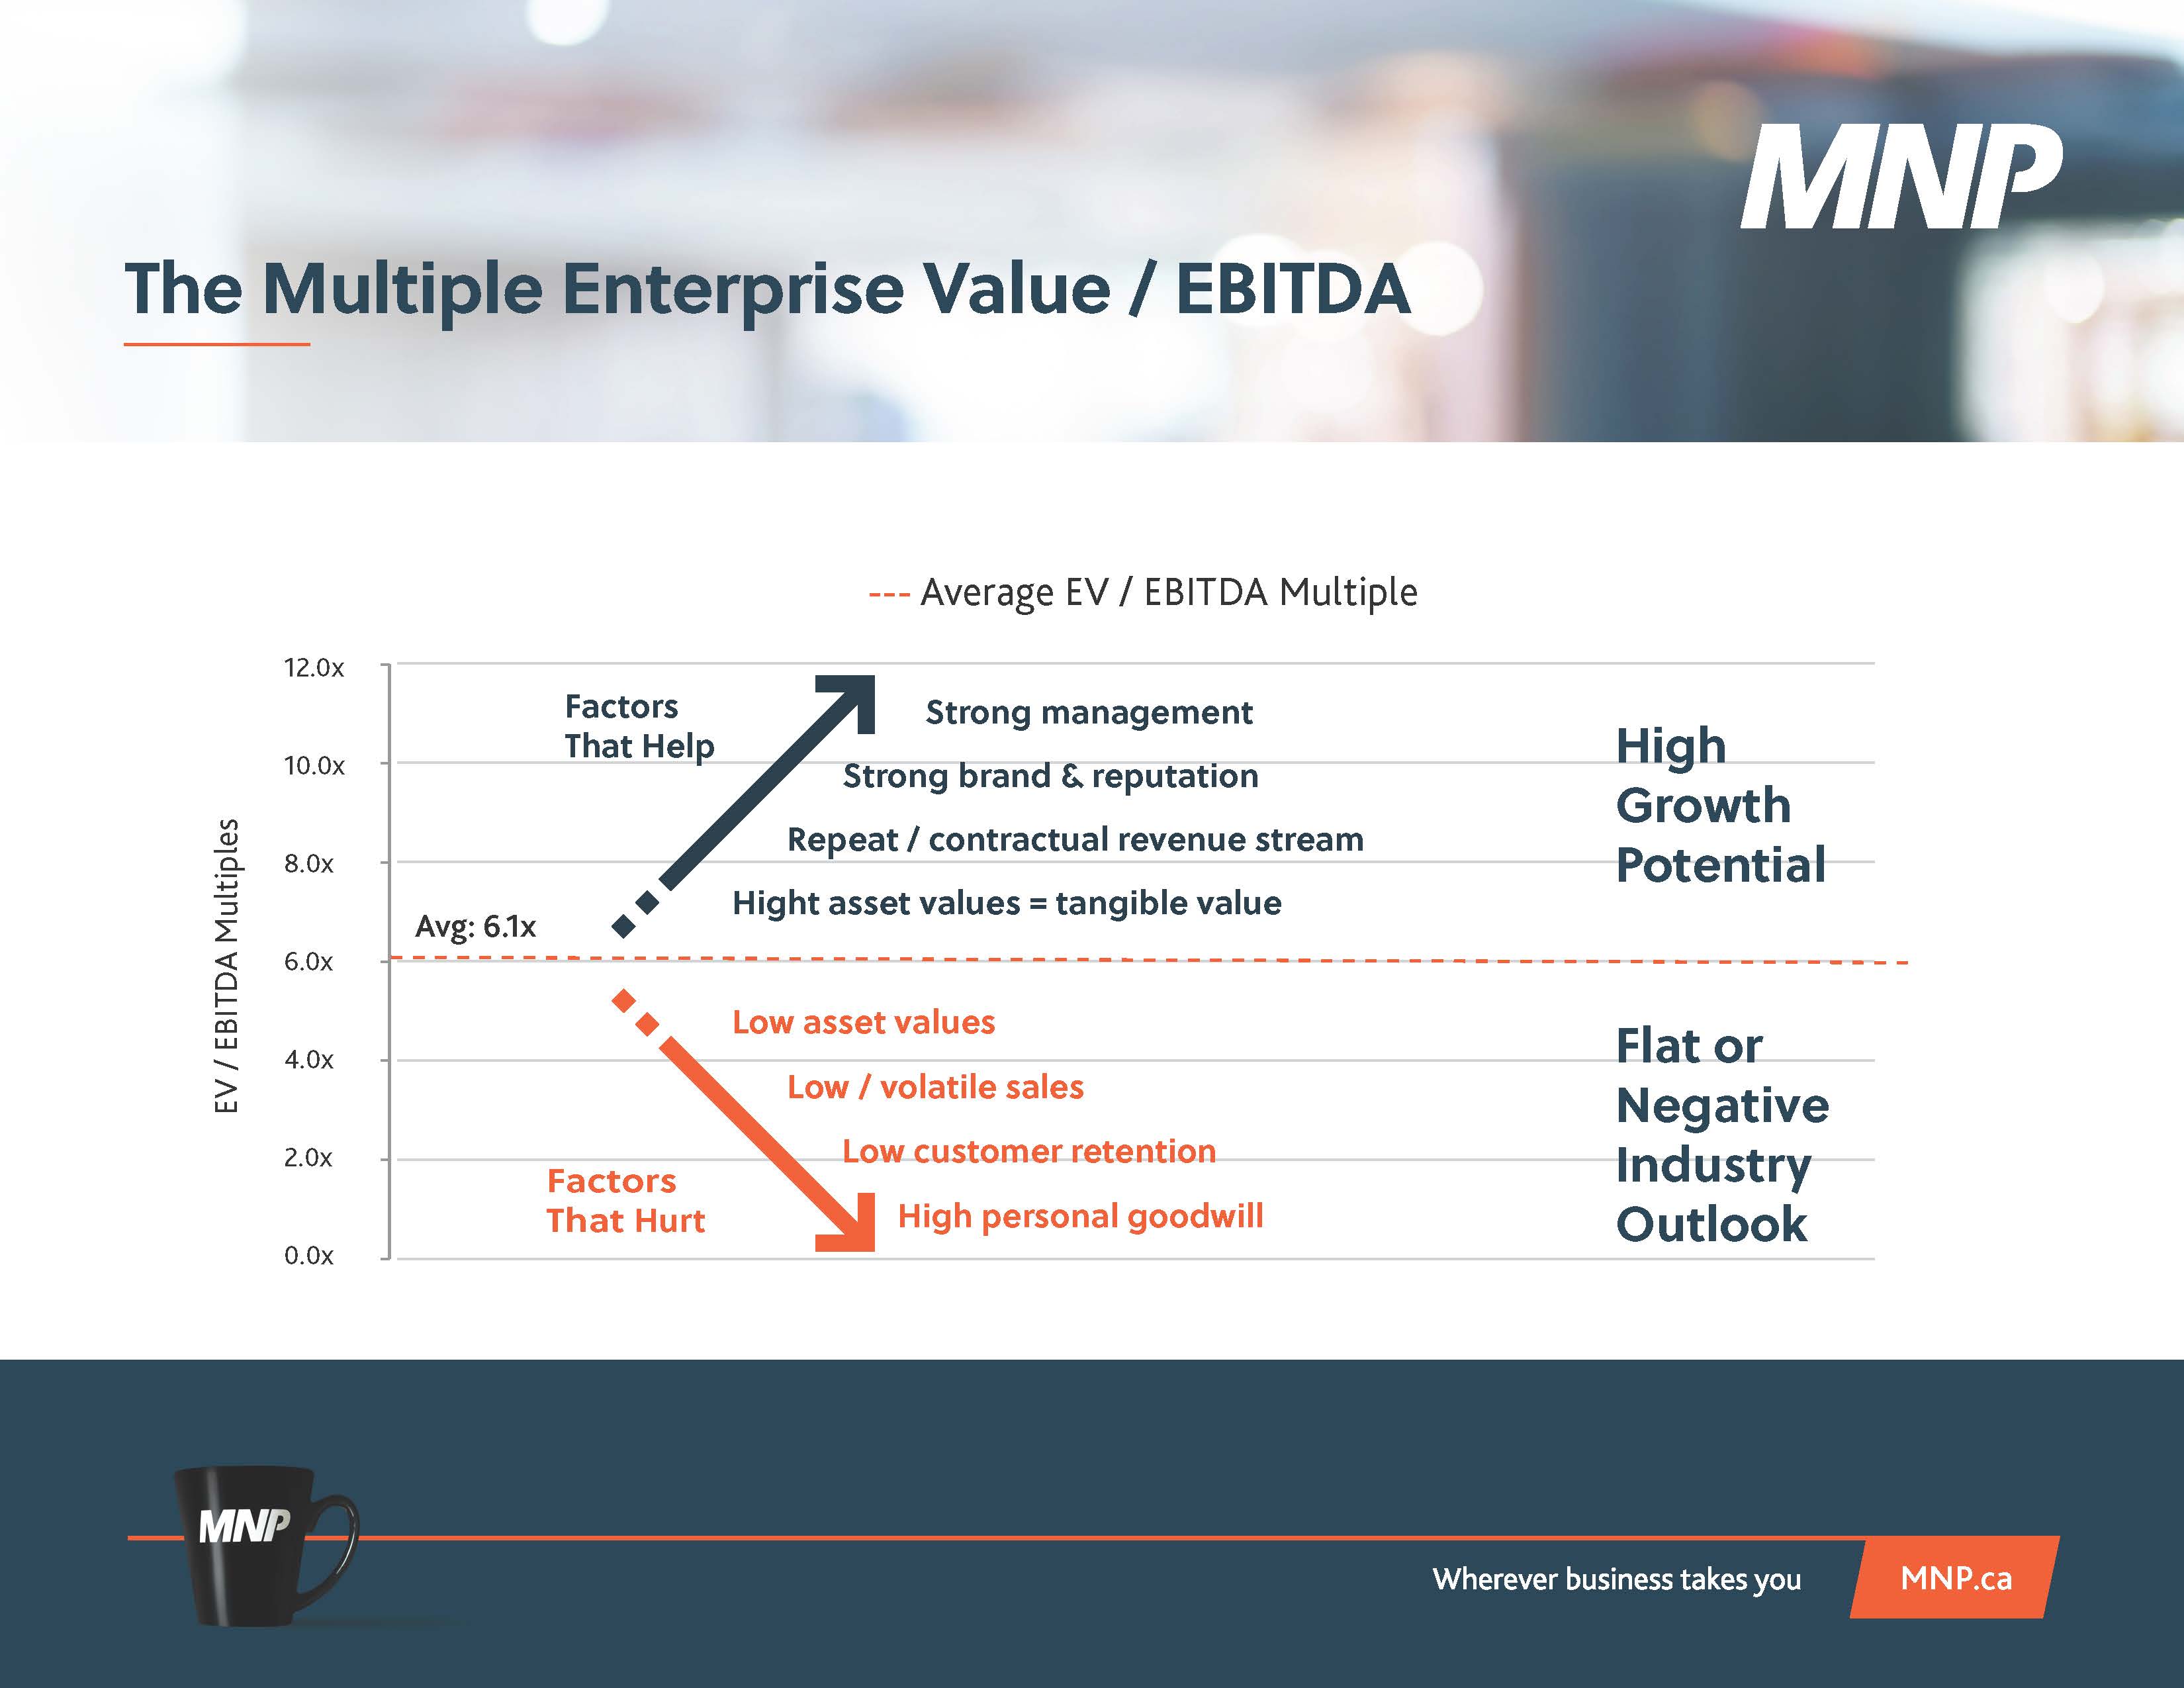 Graph showing the relationship between EV/EBITDA Multiples and Average EV/EBITDA Multiple